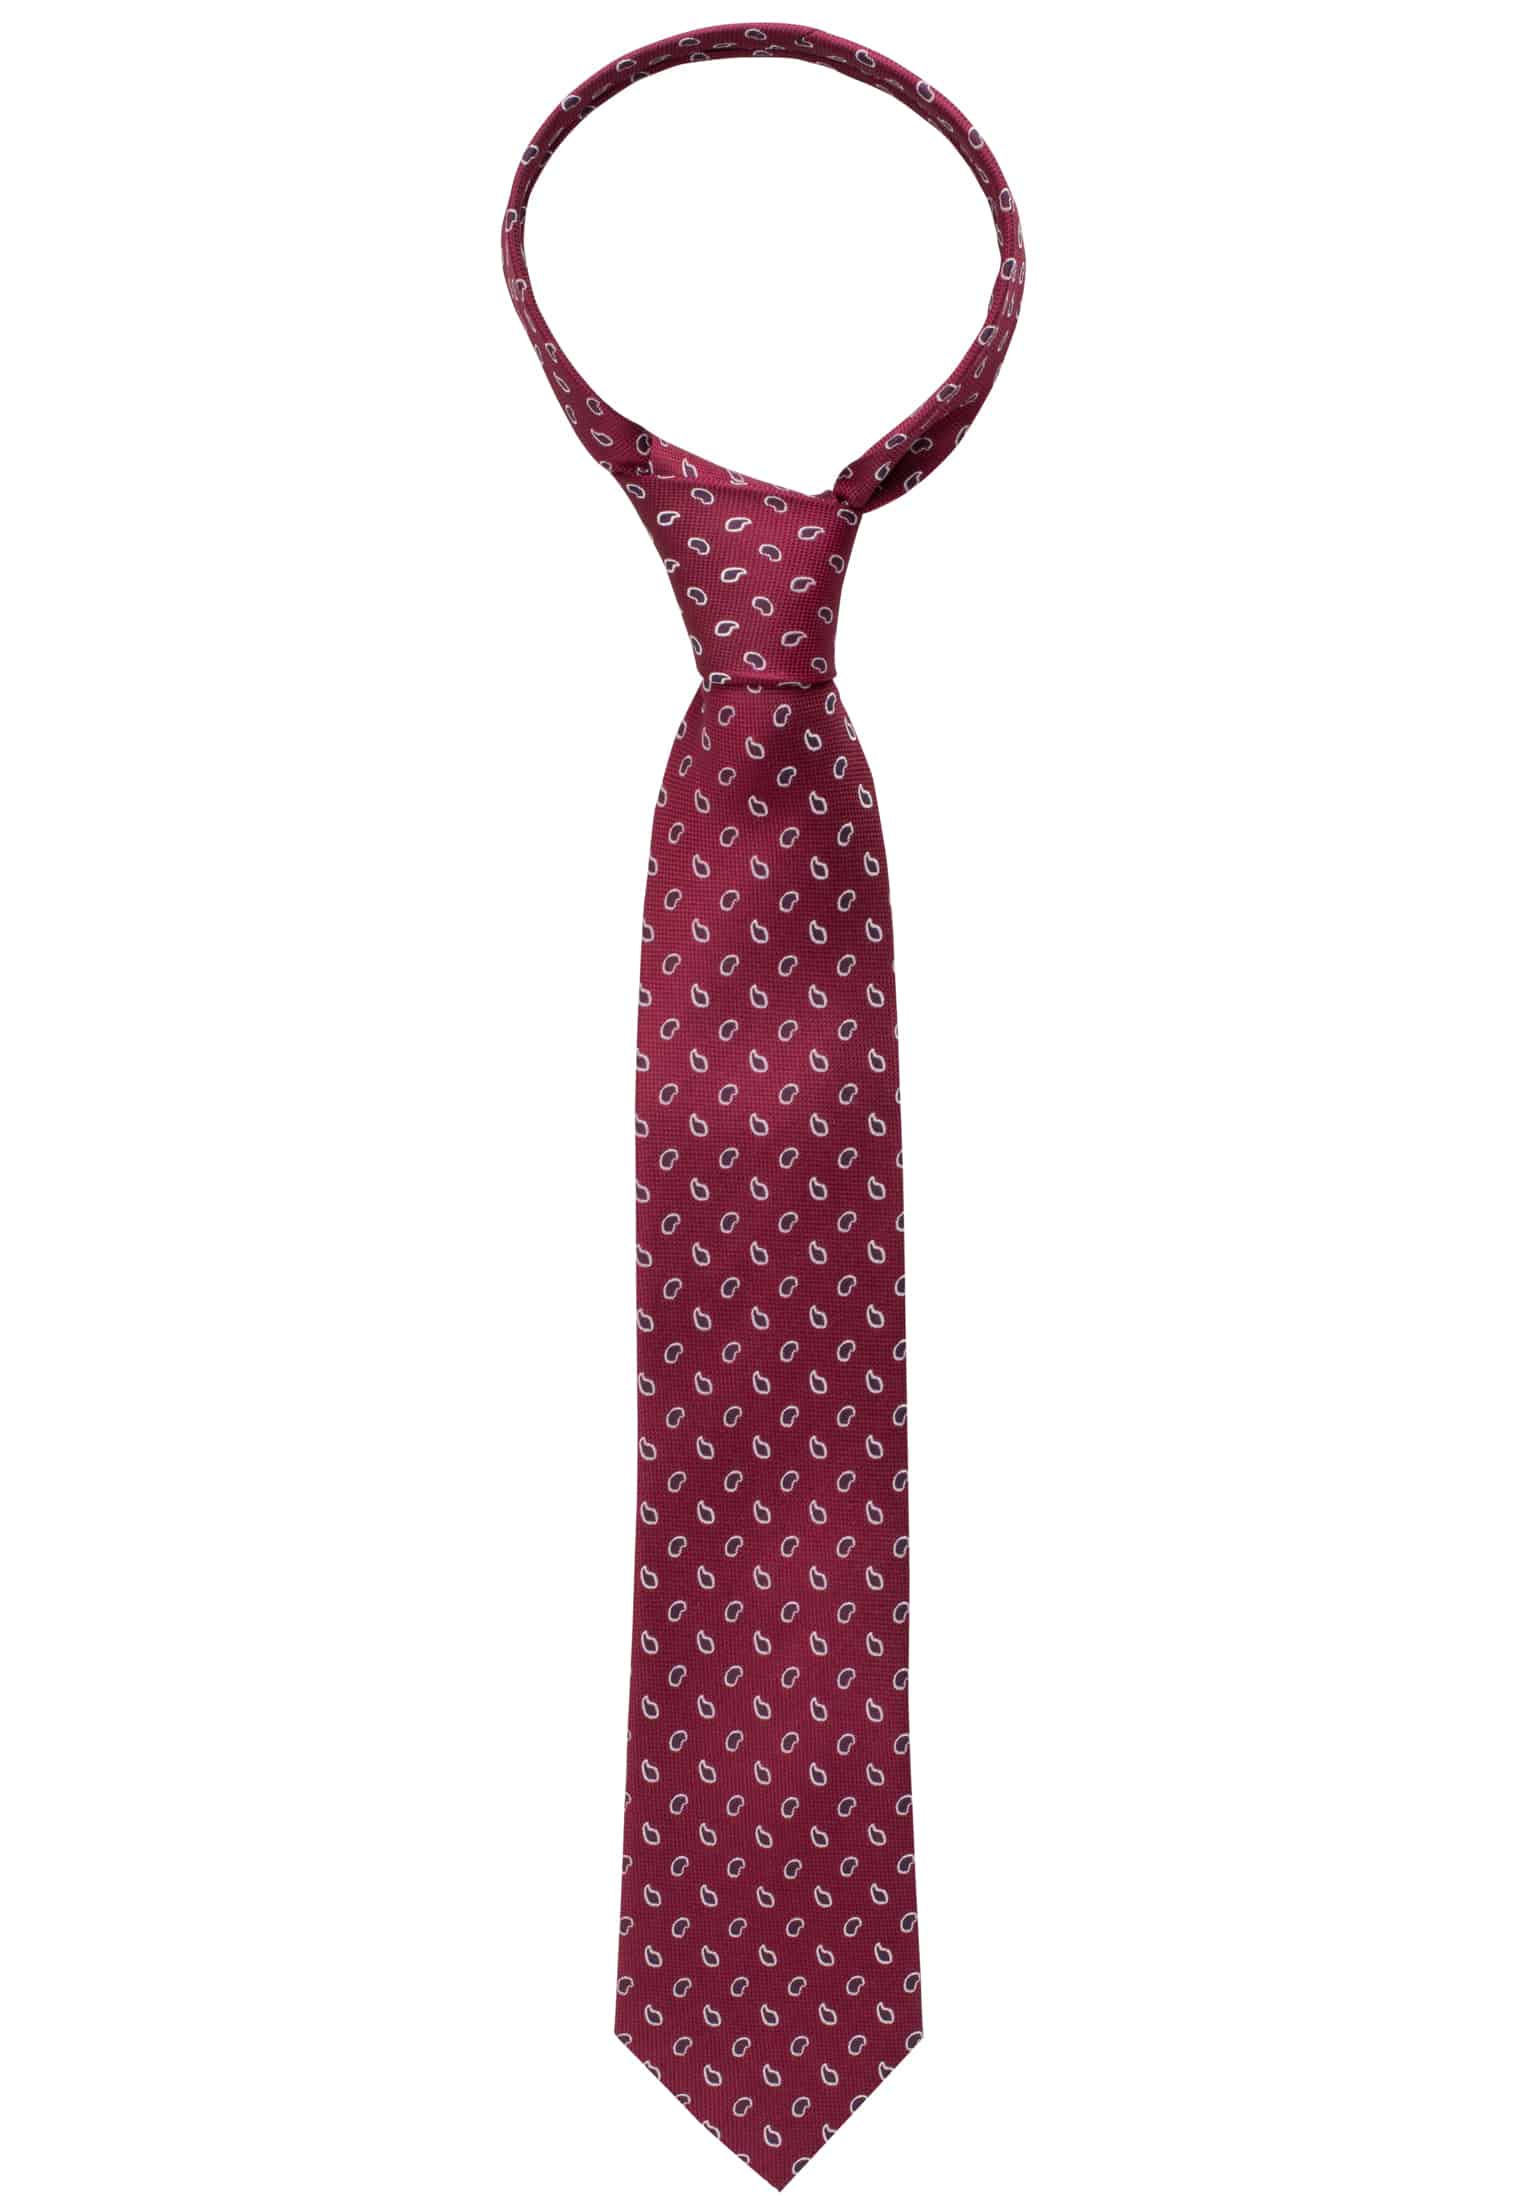 Krawatte in bordeaux gemustert | 142 1AC00541-05-84-142 | bordeaux 